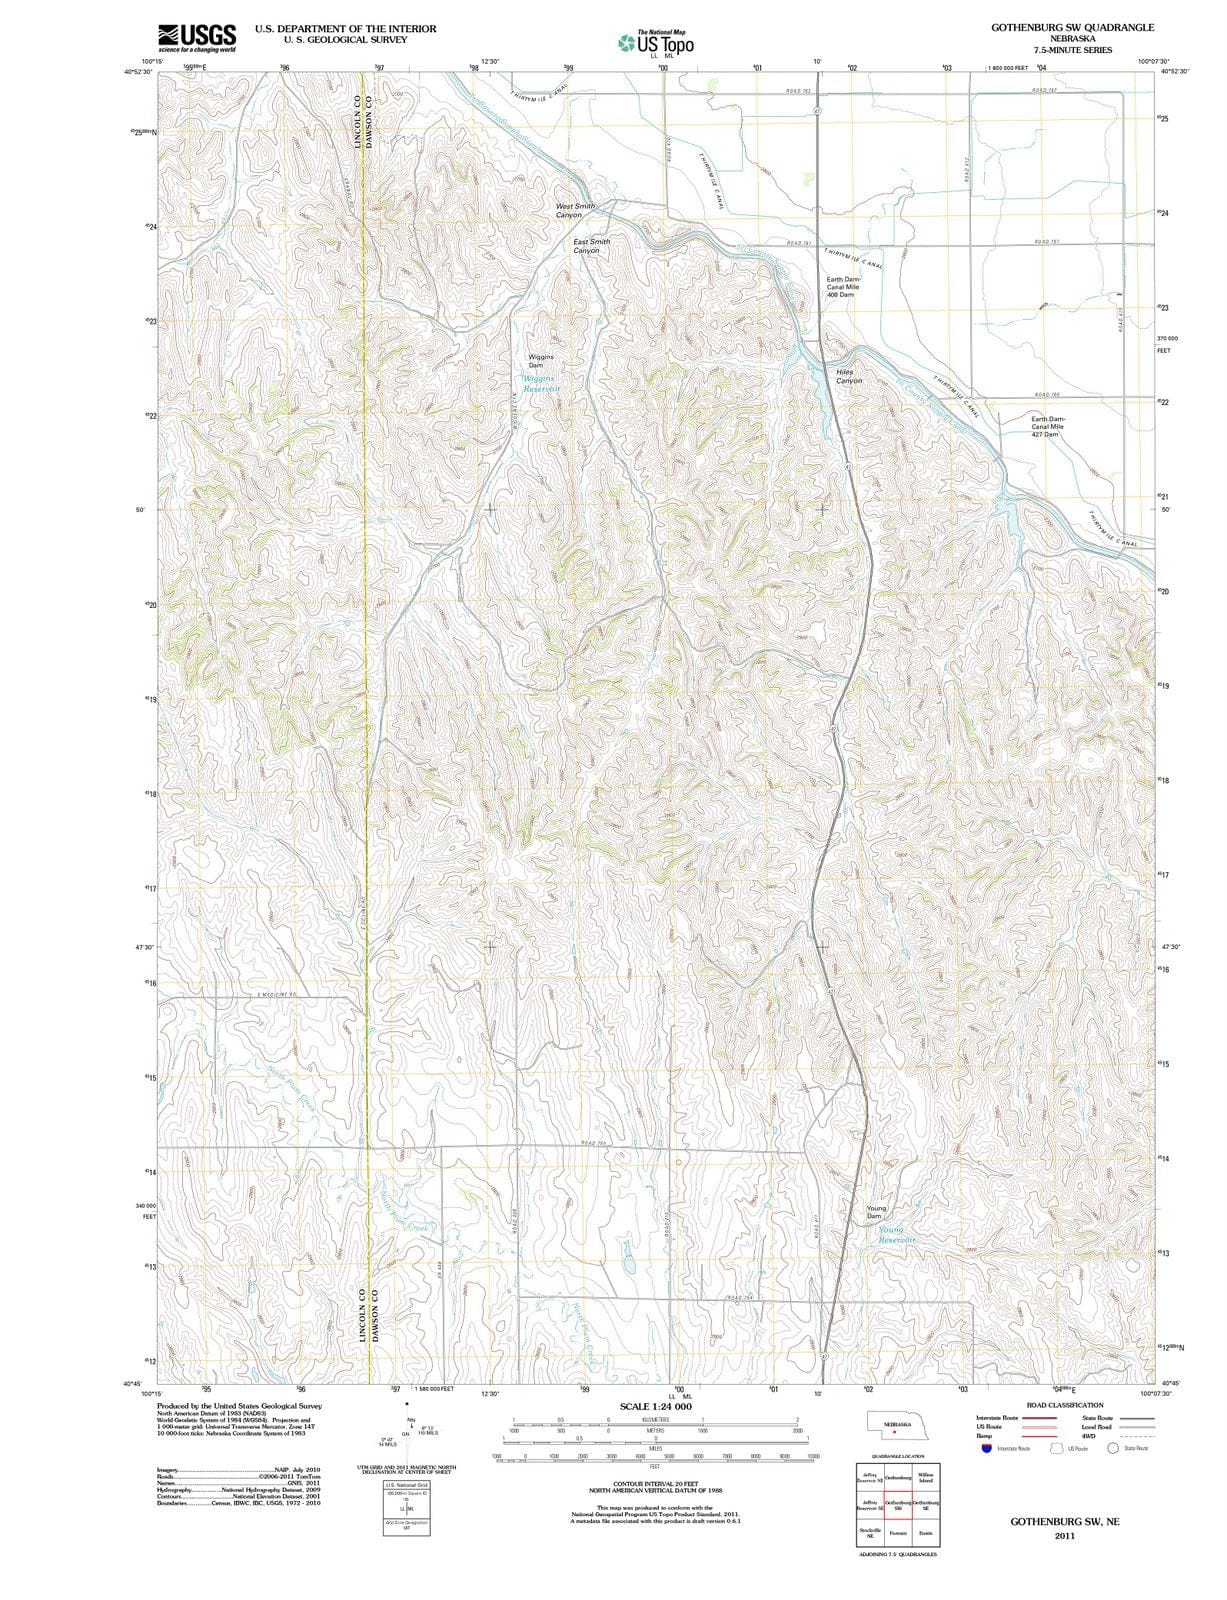 2011 Gothenburg, NE - Nebraska - USGS Topographic Map v2